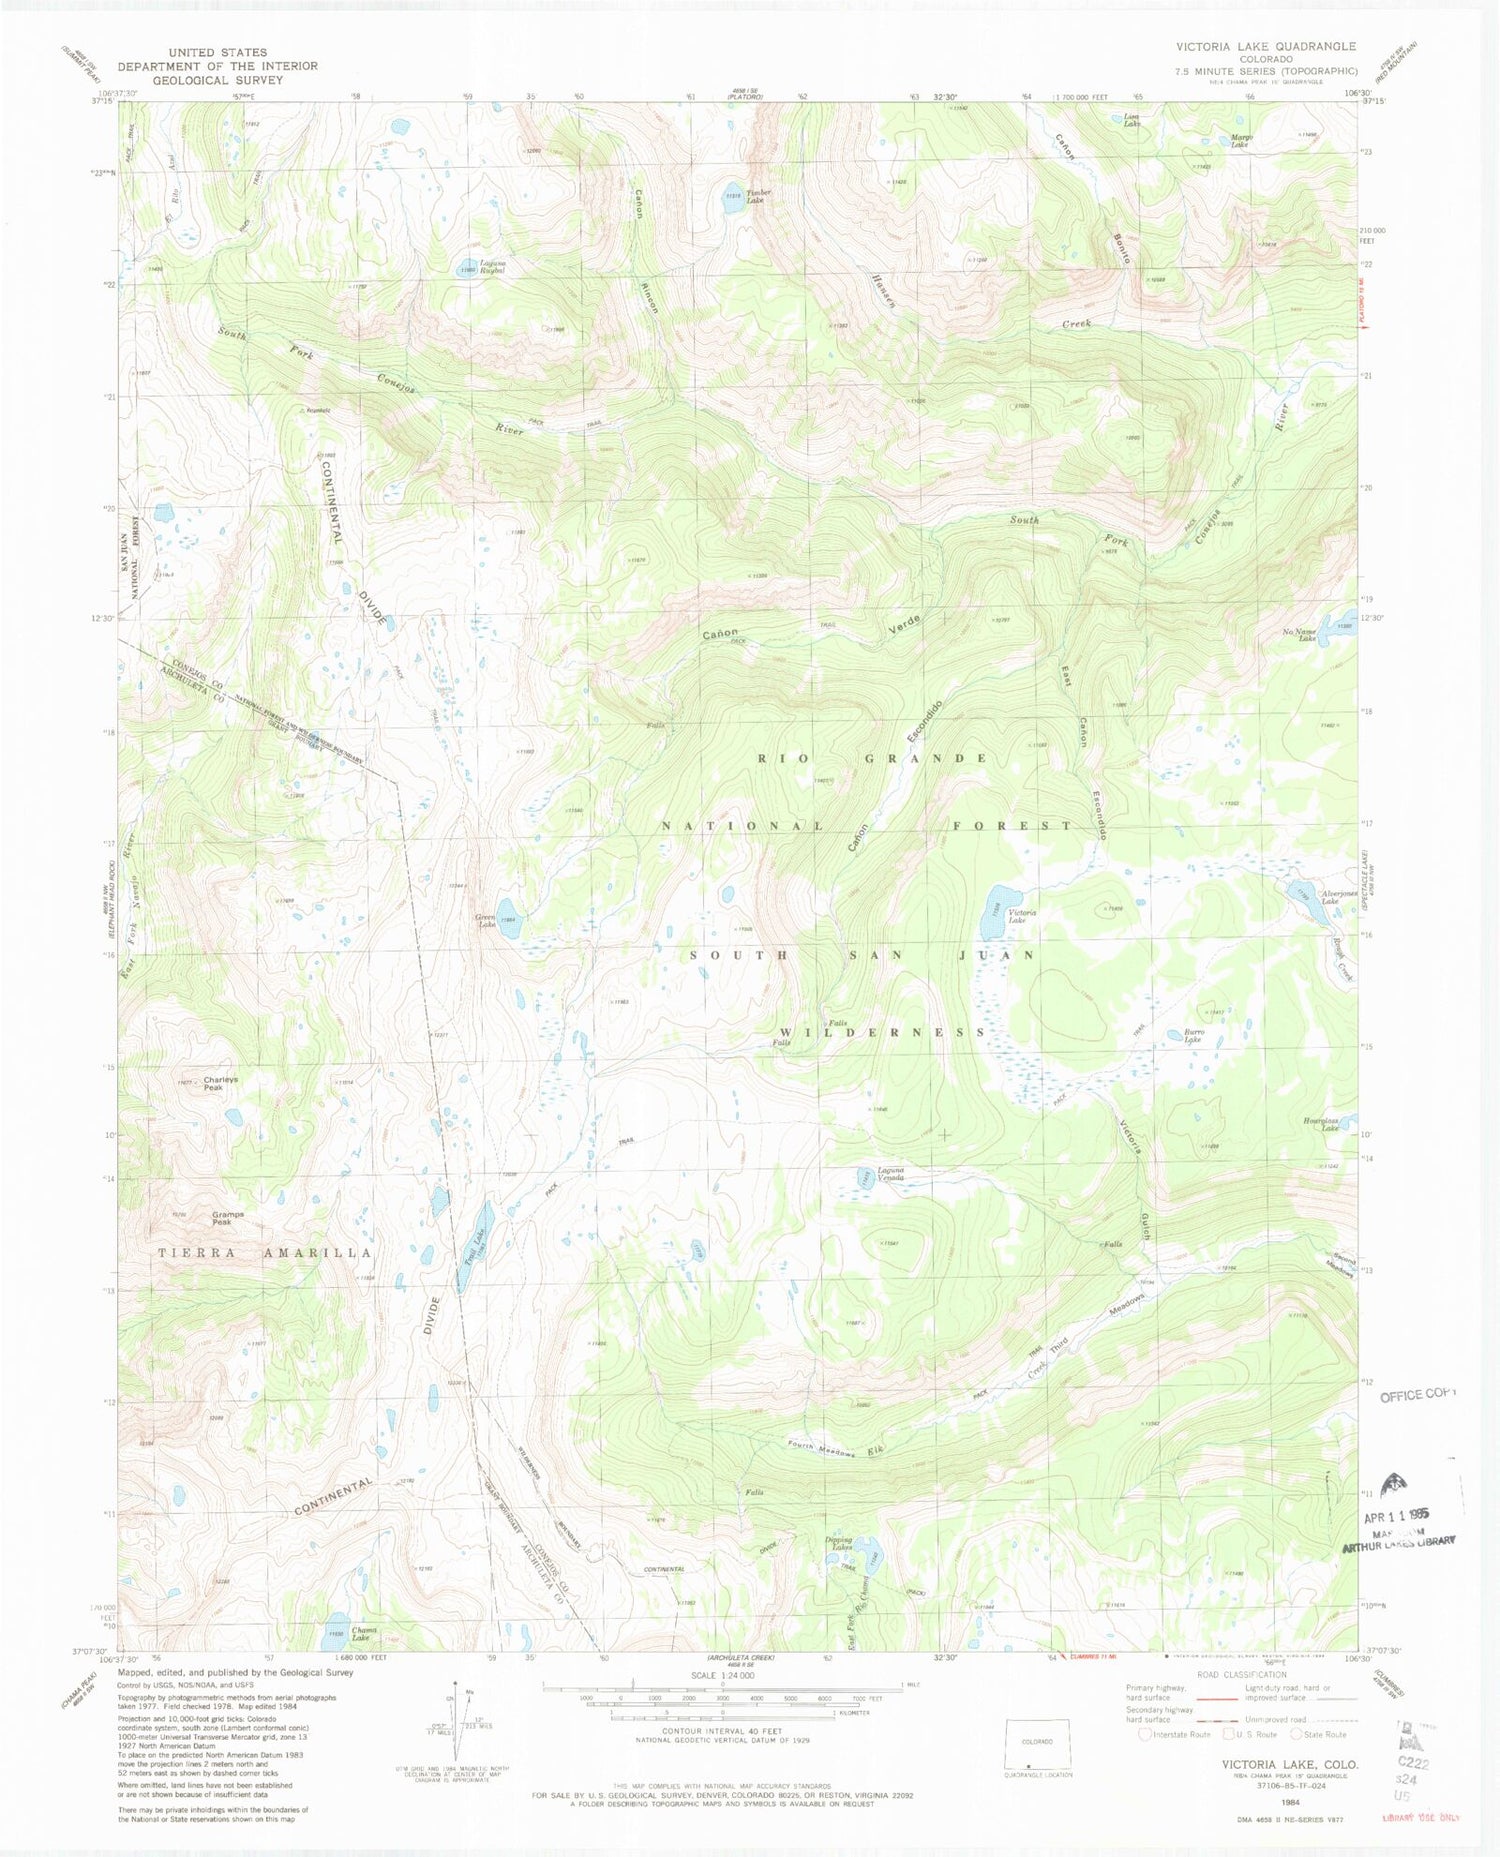 USGS Classic Victoria Lake Colorado 7.5'x7.5' Topo Map Image